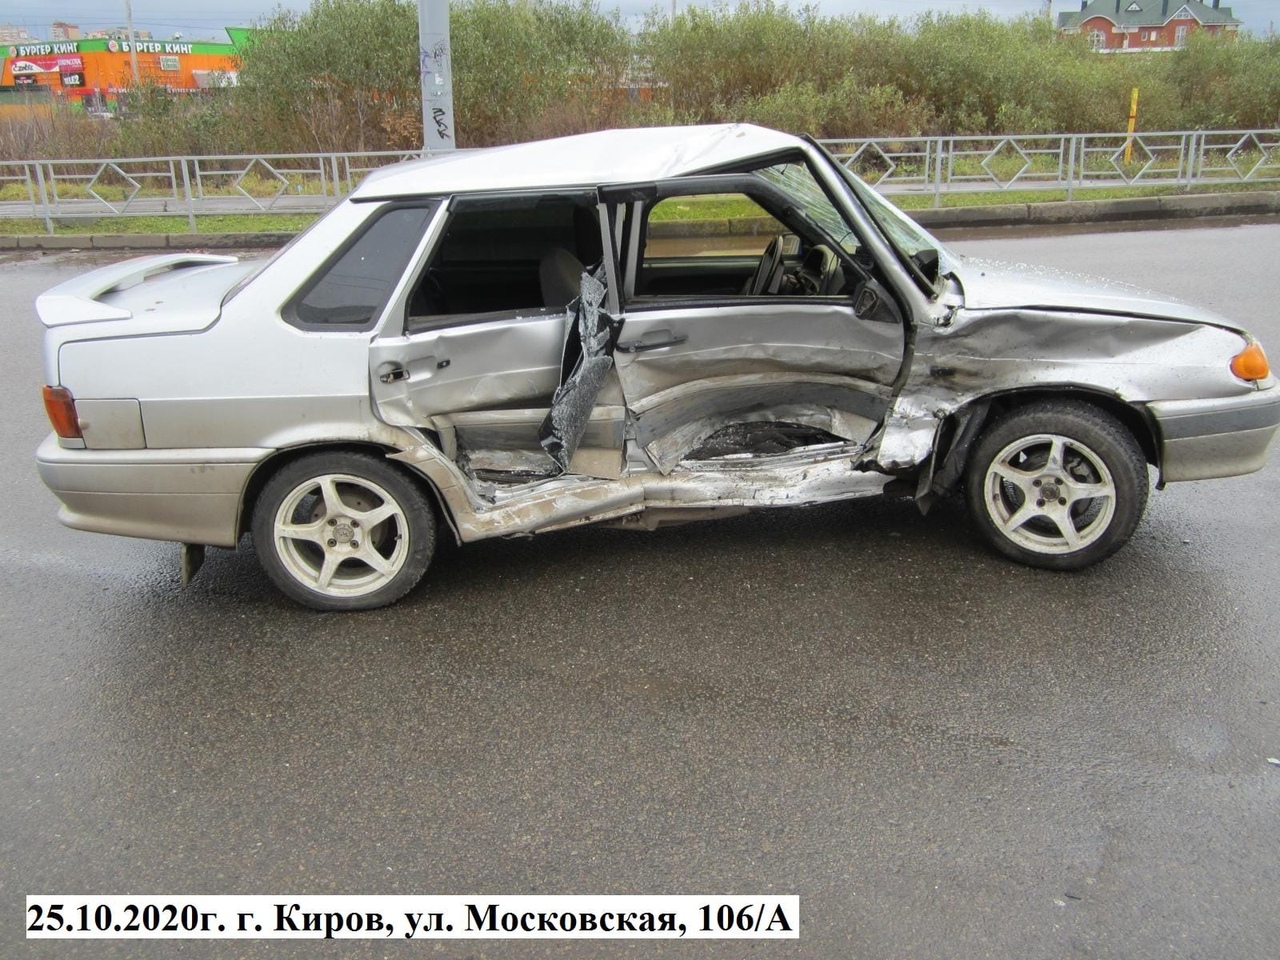 «Машины всмятку»: в Кирове за день на двух перекрестках произошло 2 серьезных ДТП